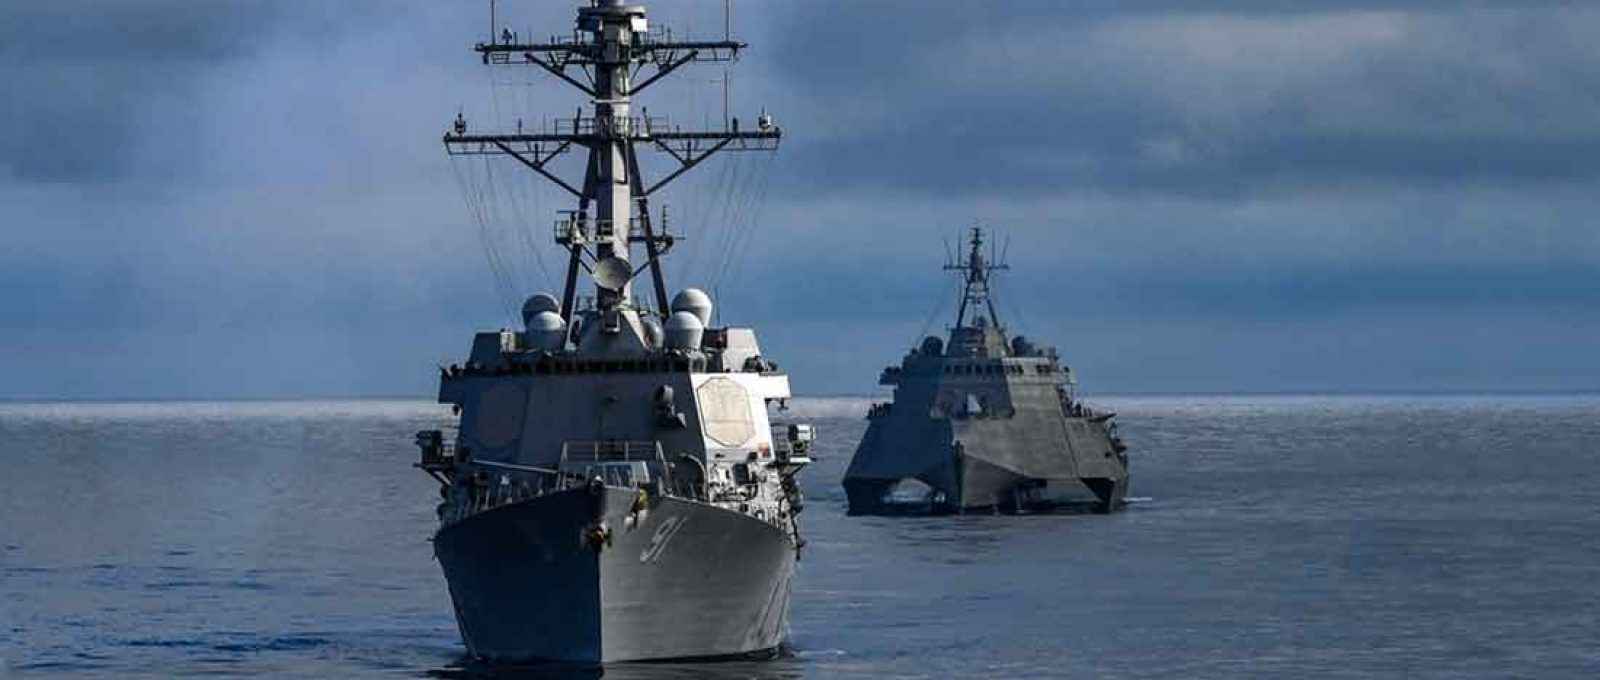 O destroier USS Pinckney (DDG 91), à frente, e o navio de combate litorâneo USS Omaha (Foto: Alex Corona/US Navy).